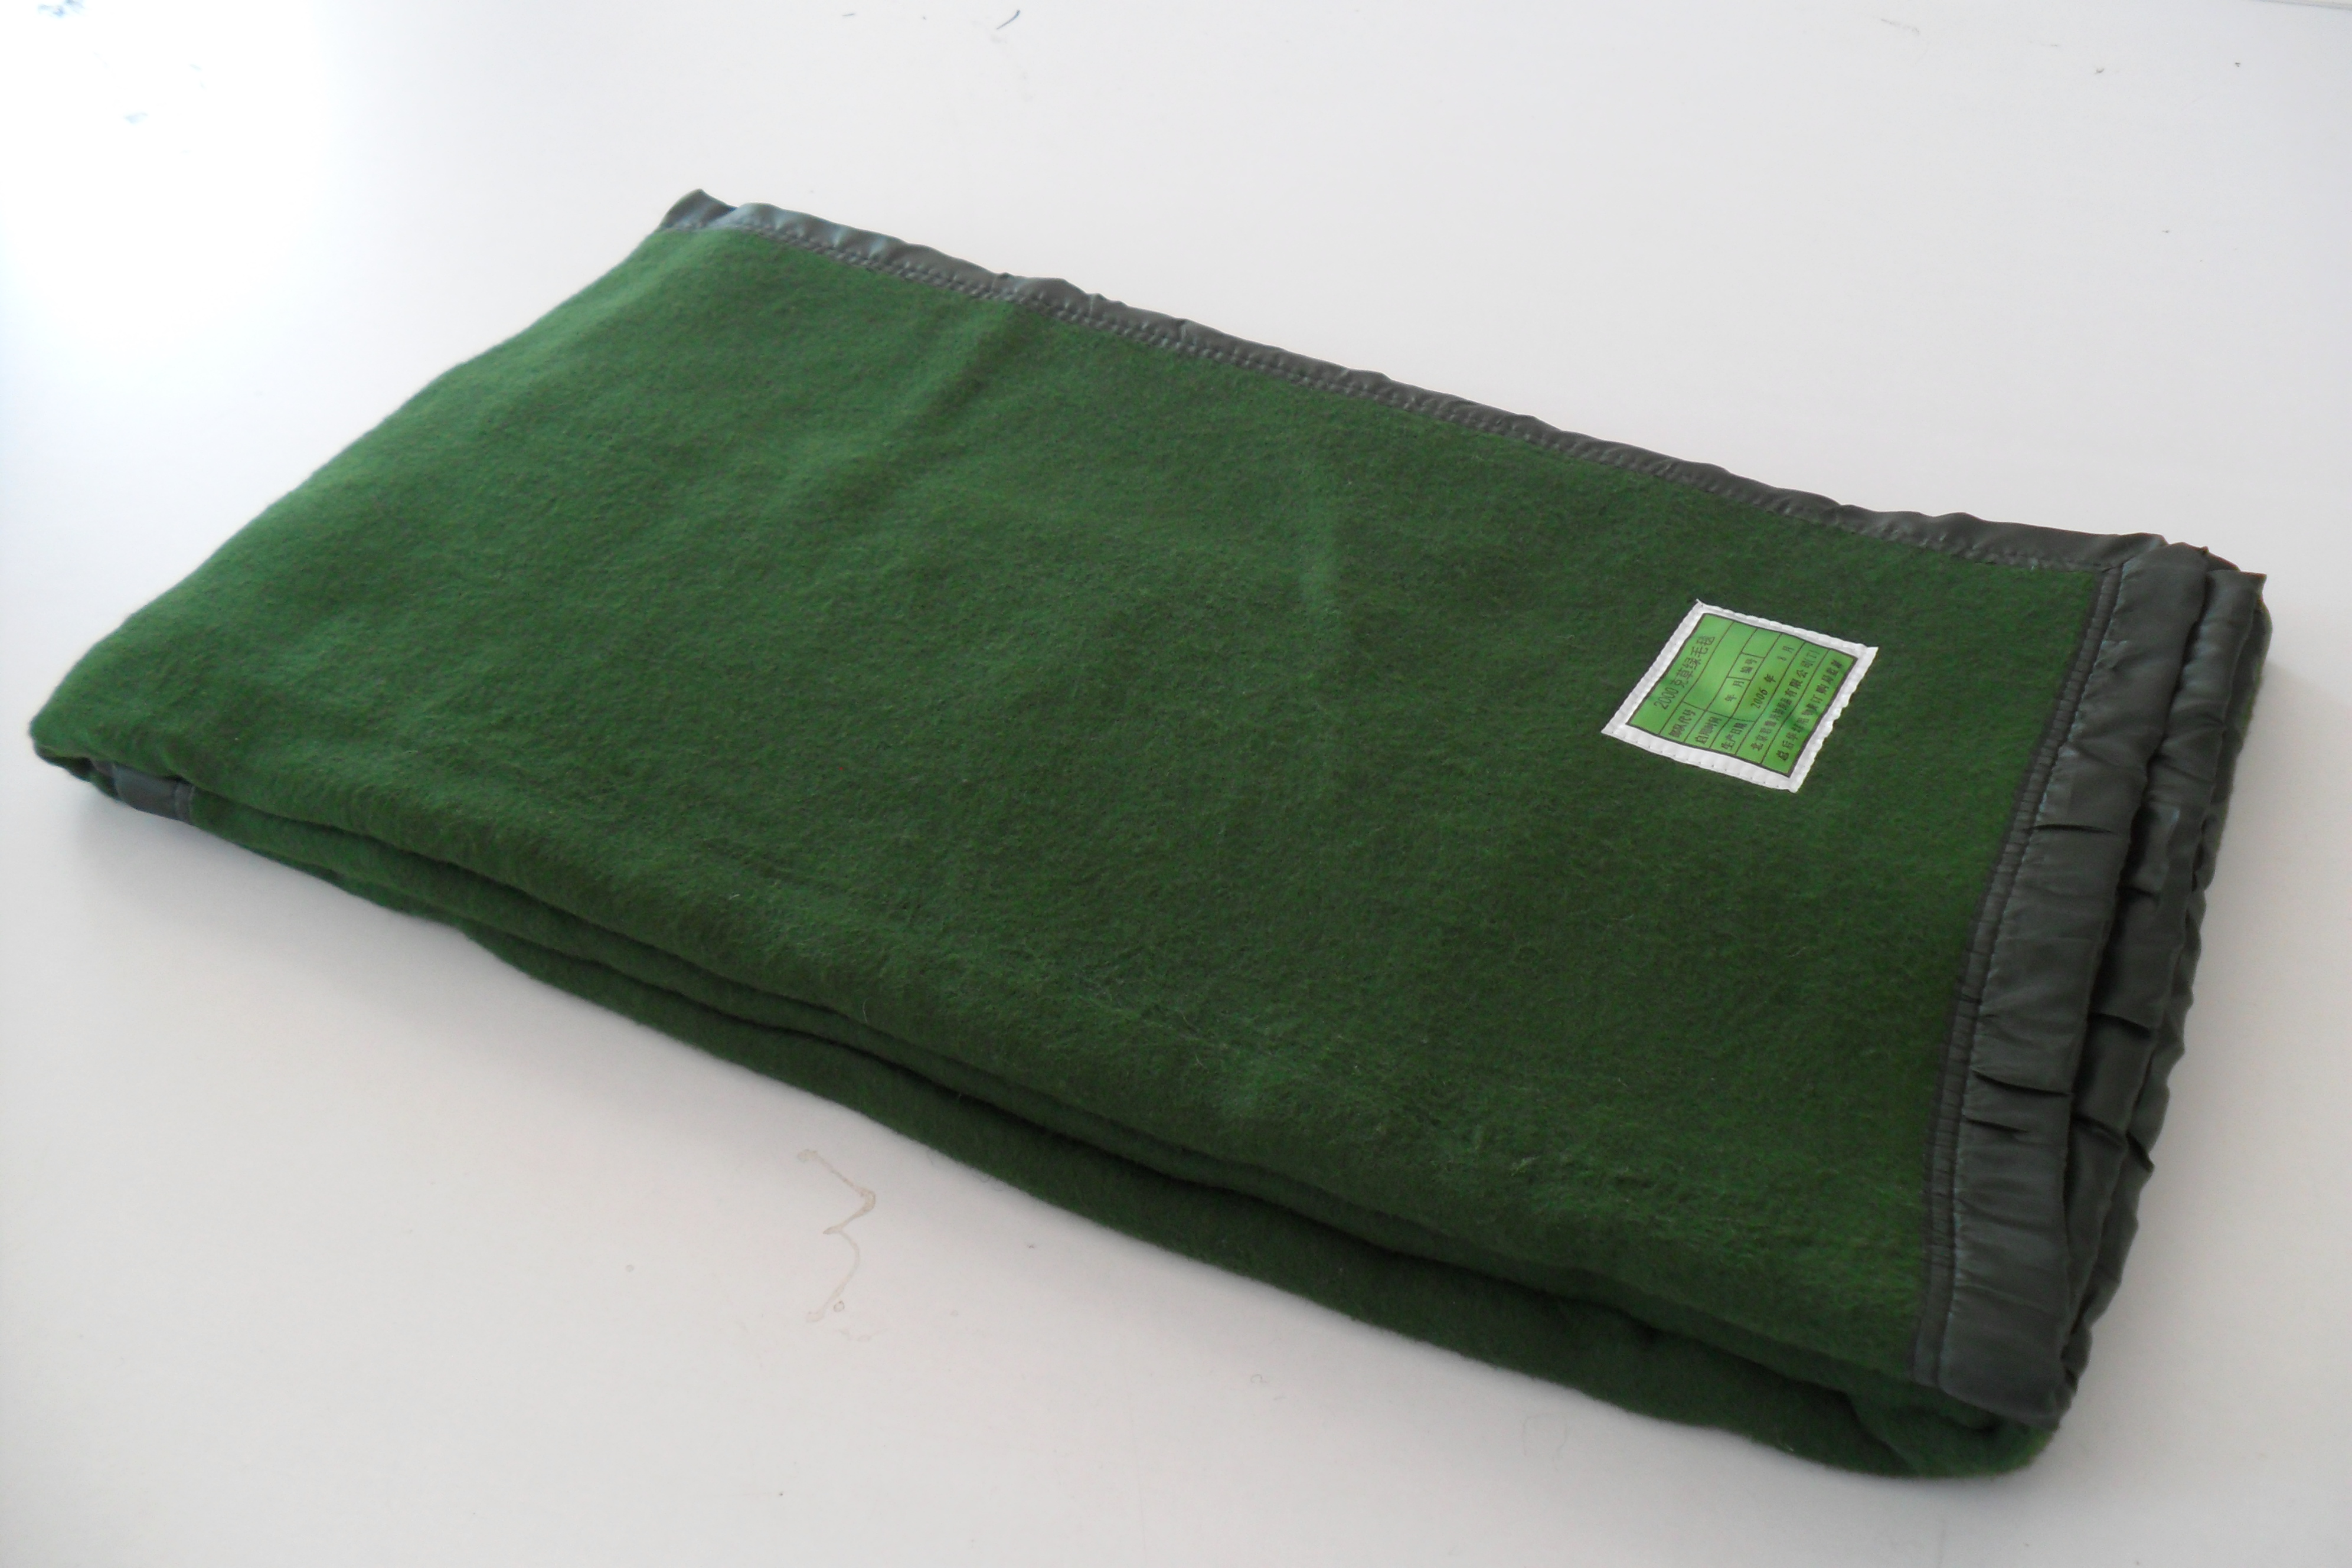 2000克草绿毛毯君需兴纺织品华北物资厂家直销绿色军毯